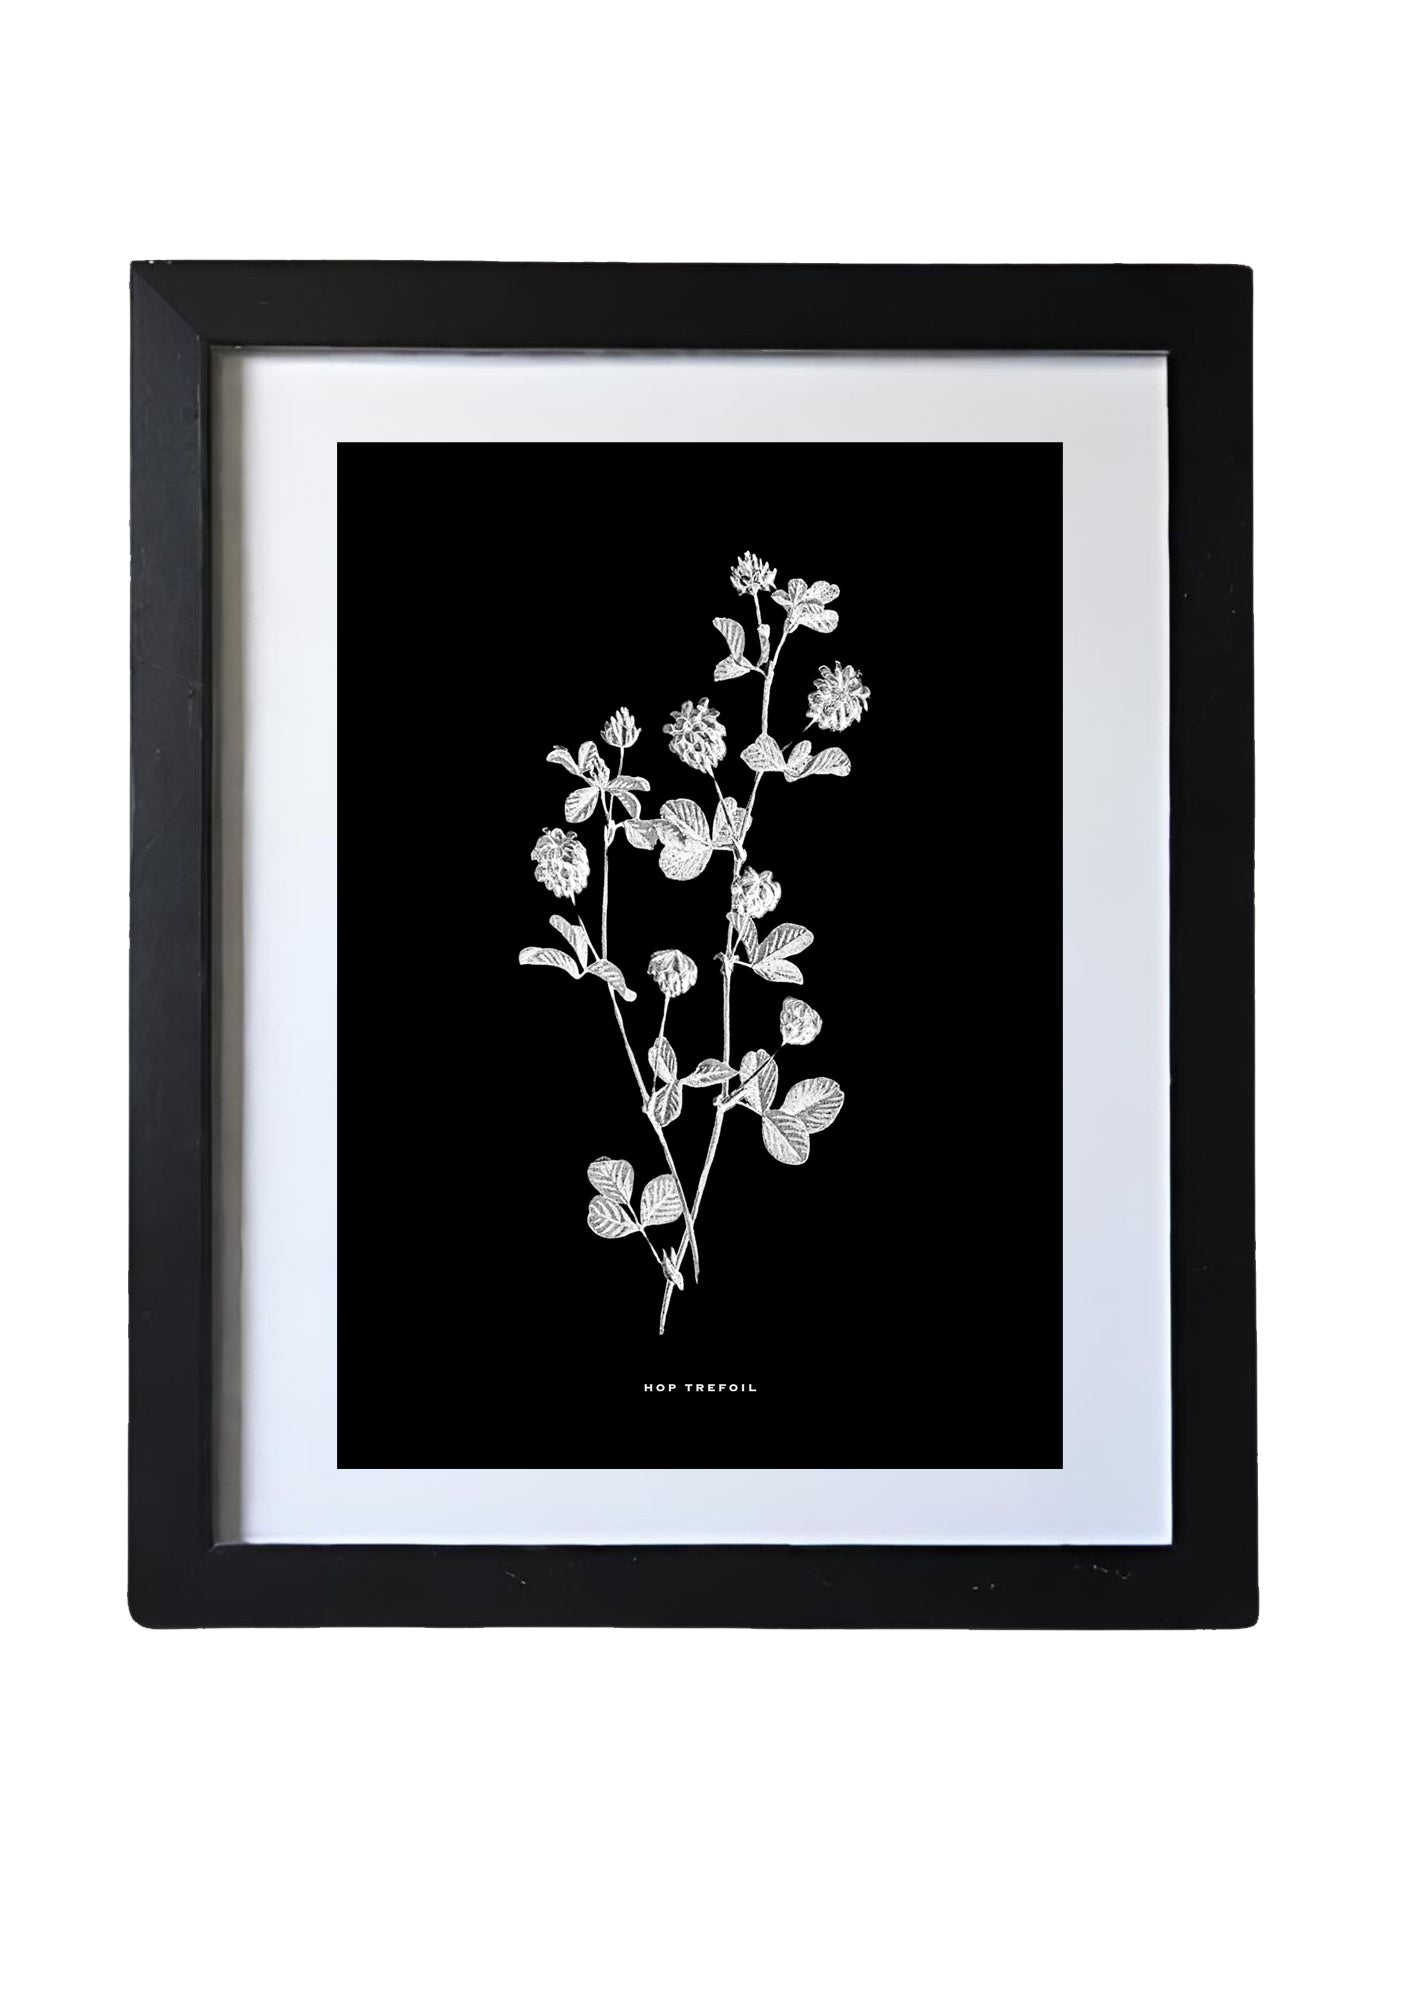 Black & White Framed Vintage Botanical Floral Art Prints: Set Of Four